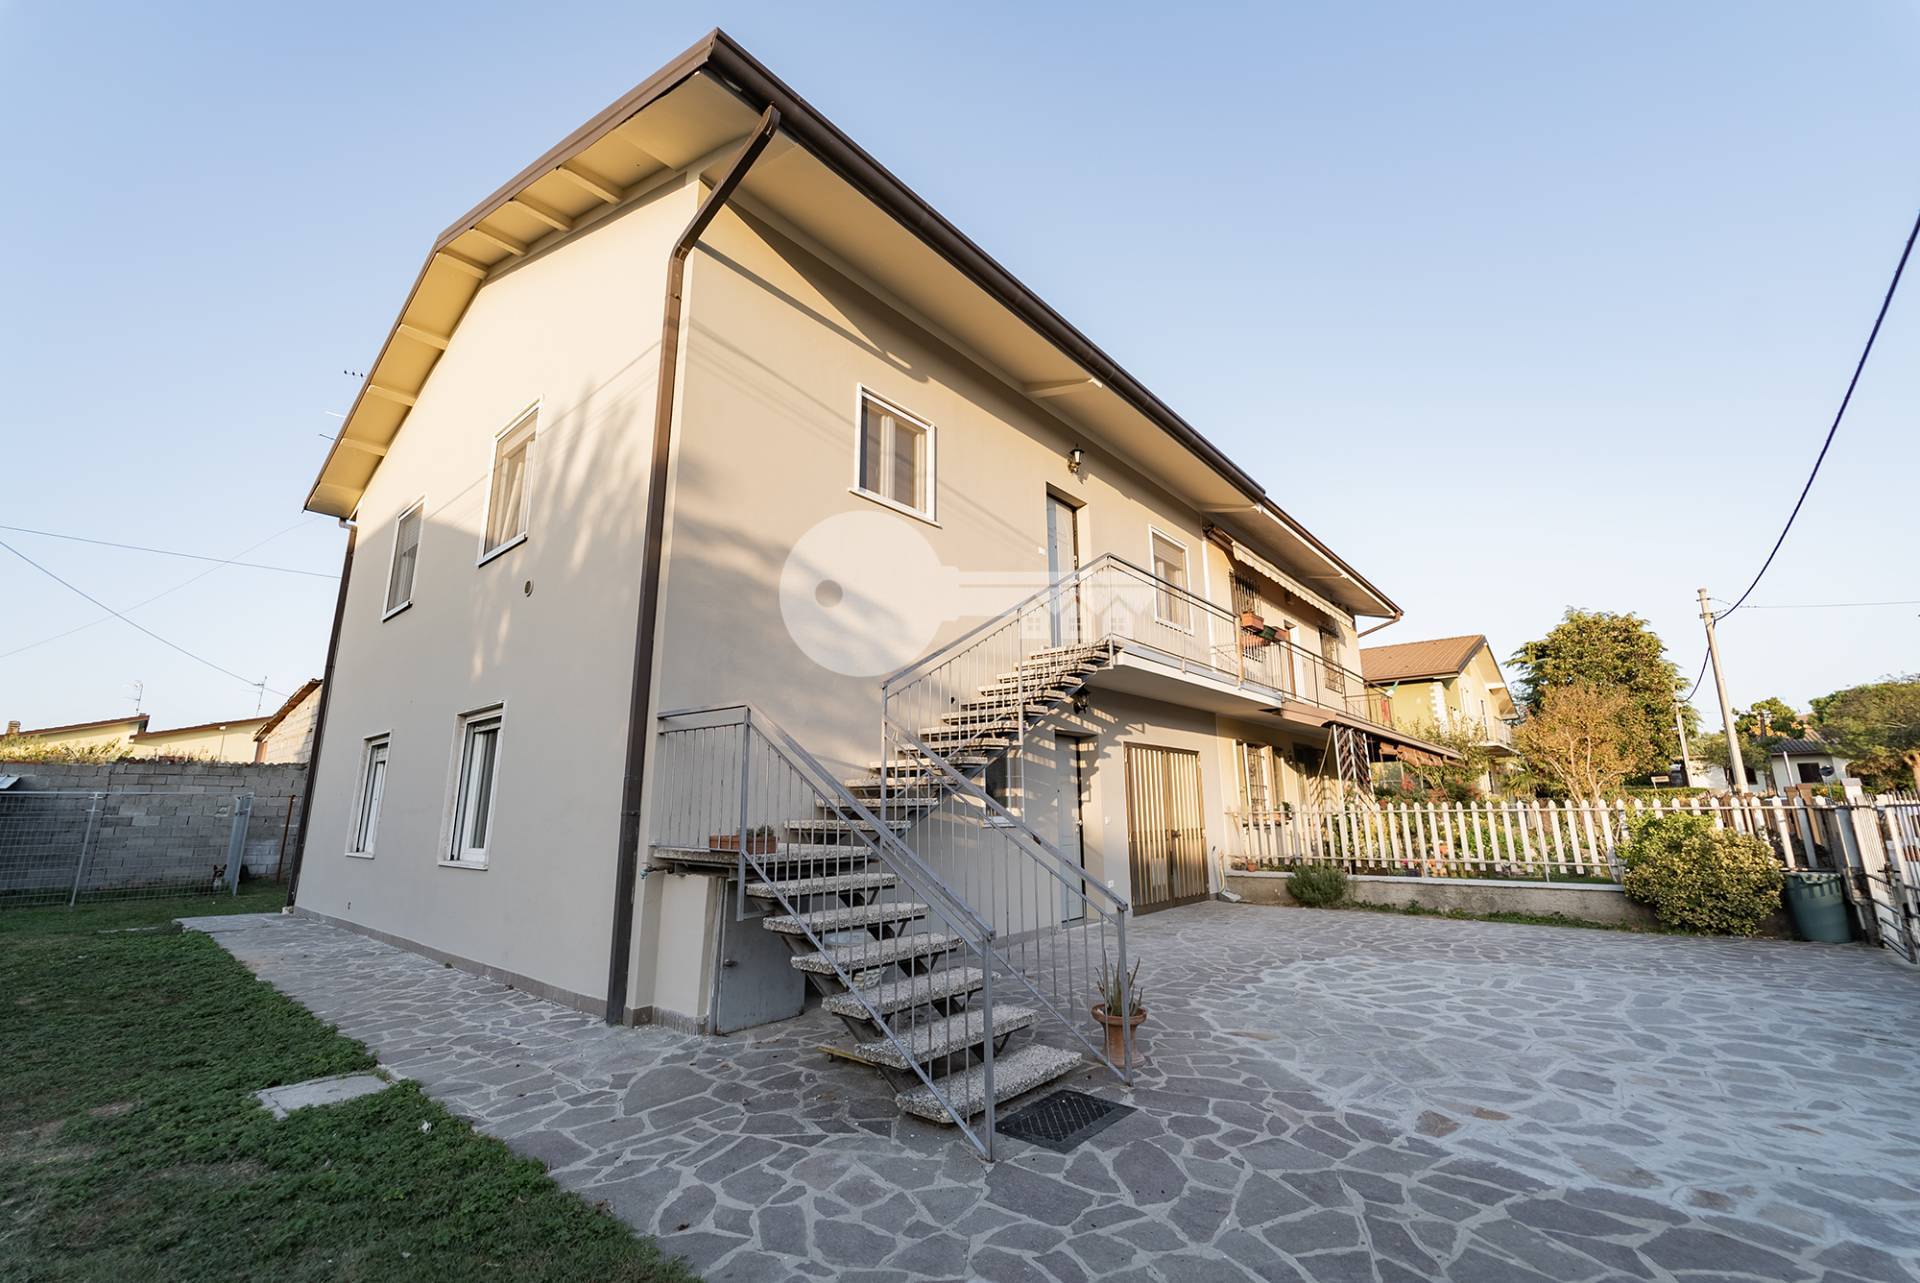 Villa Bifamiliare in vendita a Leno, 4 locali, prezzo € 250.000 | PortaleAgenzieImmobiliari.it